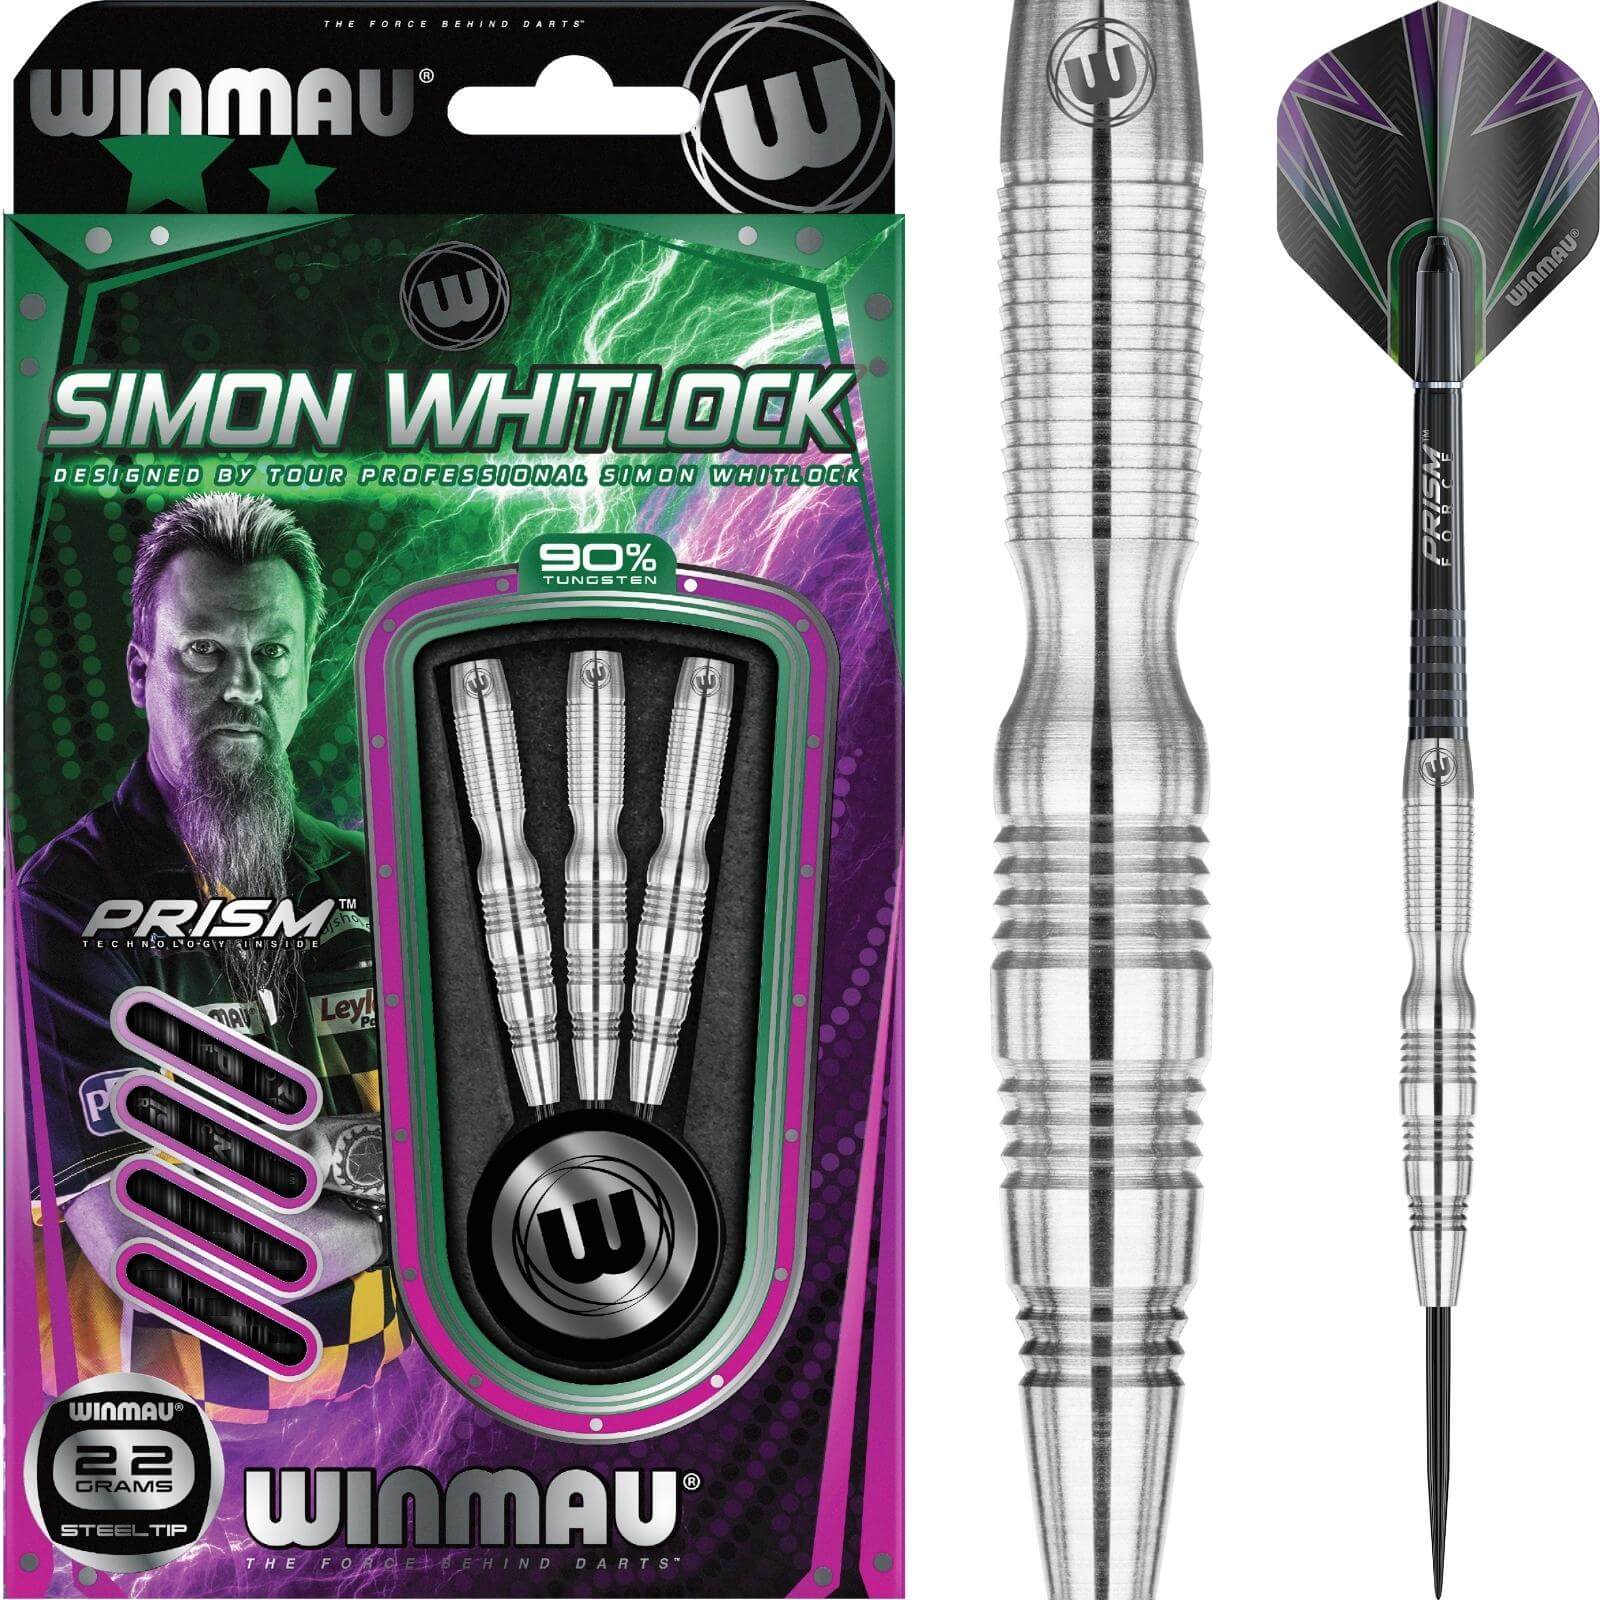 Darts - Winmau - Simon Whitlock Darts - Steel Tip - 90% Tungsten - 22g 24g 